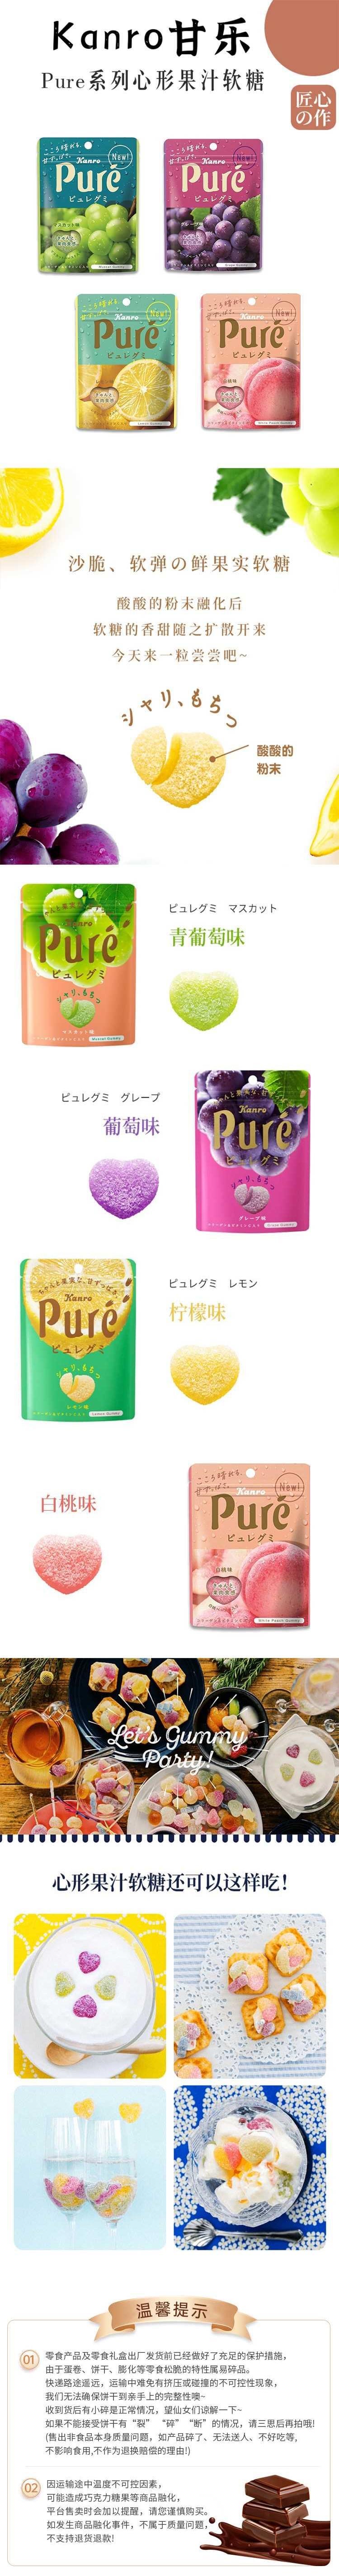 【日本直郵】KANRO甘樂 Pure果肉汁軟糖 56g 檸檬口味